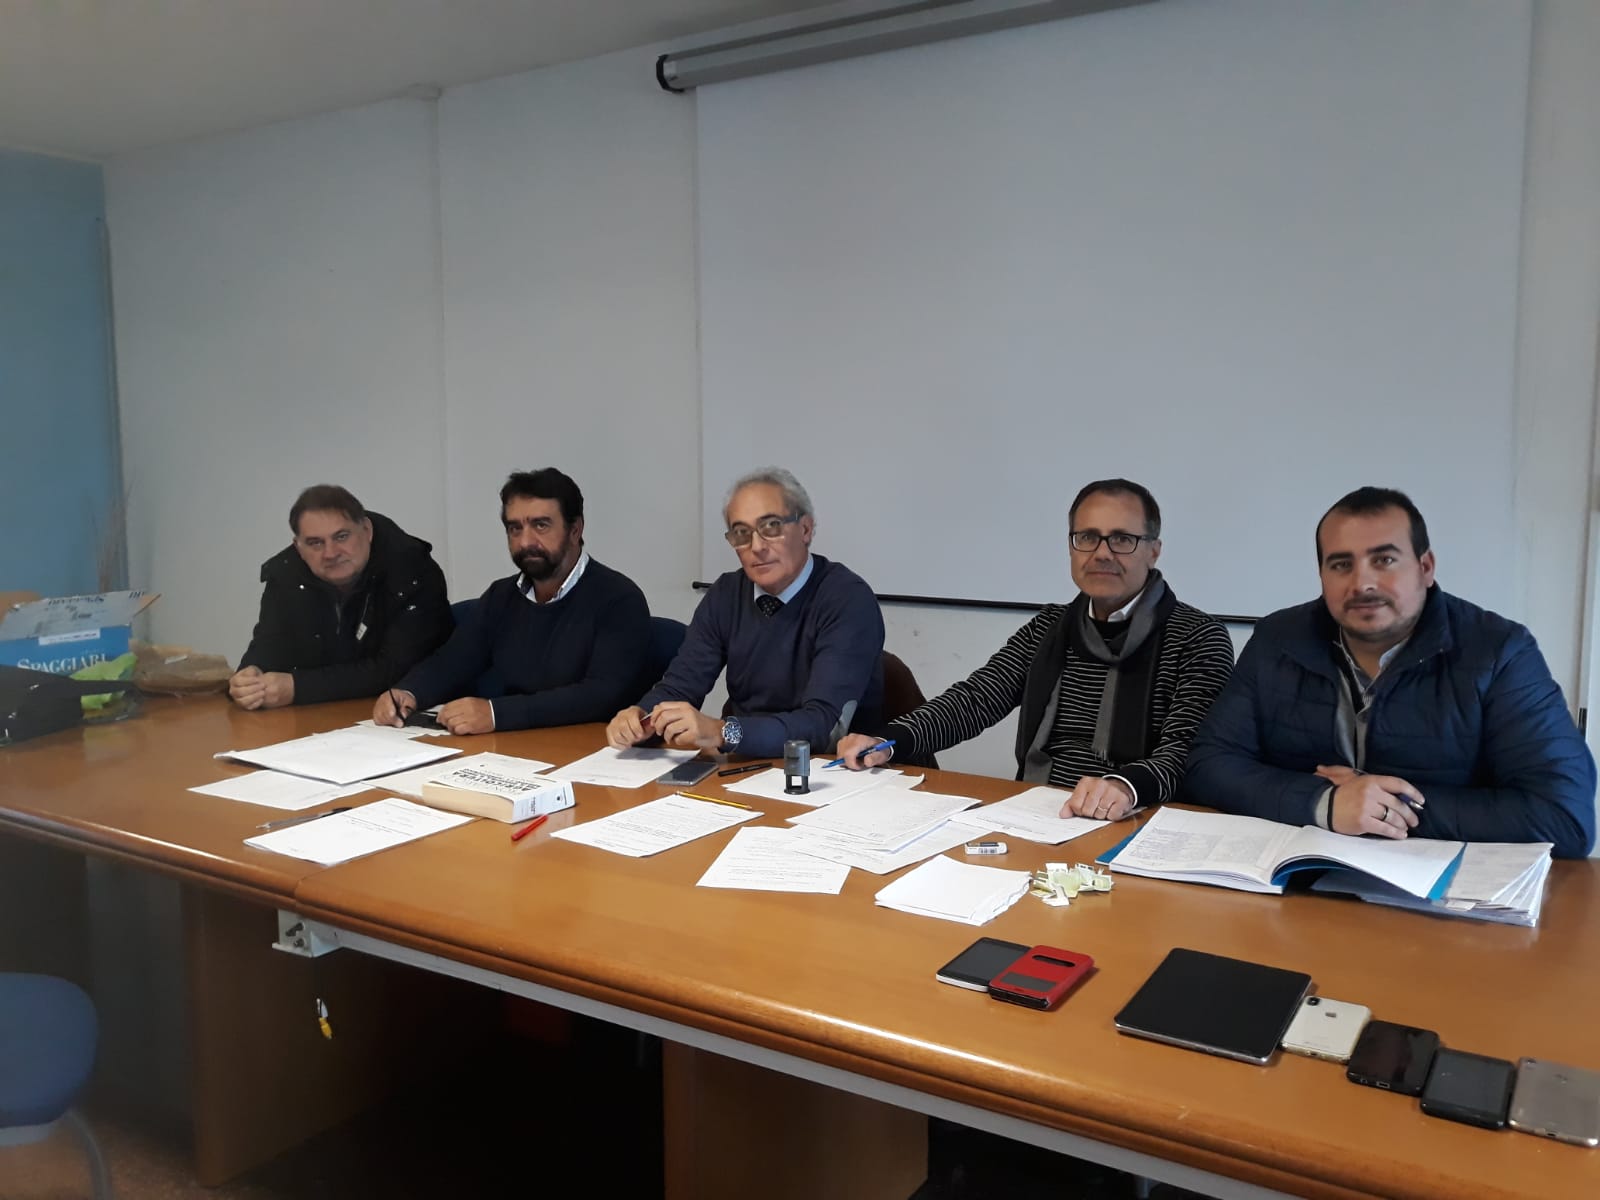 Nella foto, da sinistra, Dott. Pasquale Sale, Dott. Donato Cavaliere, Dott. Catello Di Martino, Dott. Angelo Paolucci, Dott. Antonello Ciufalo 